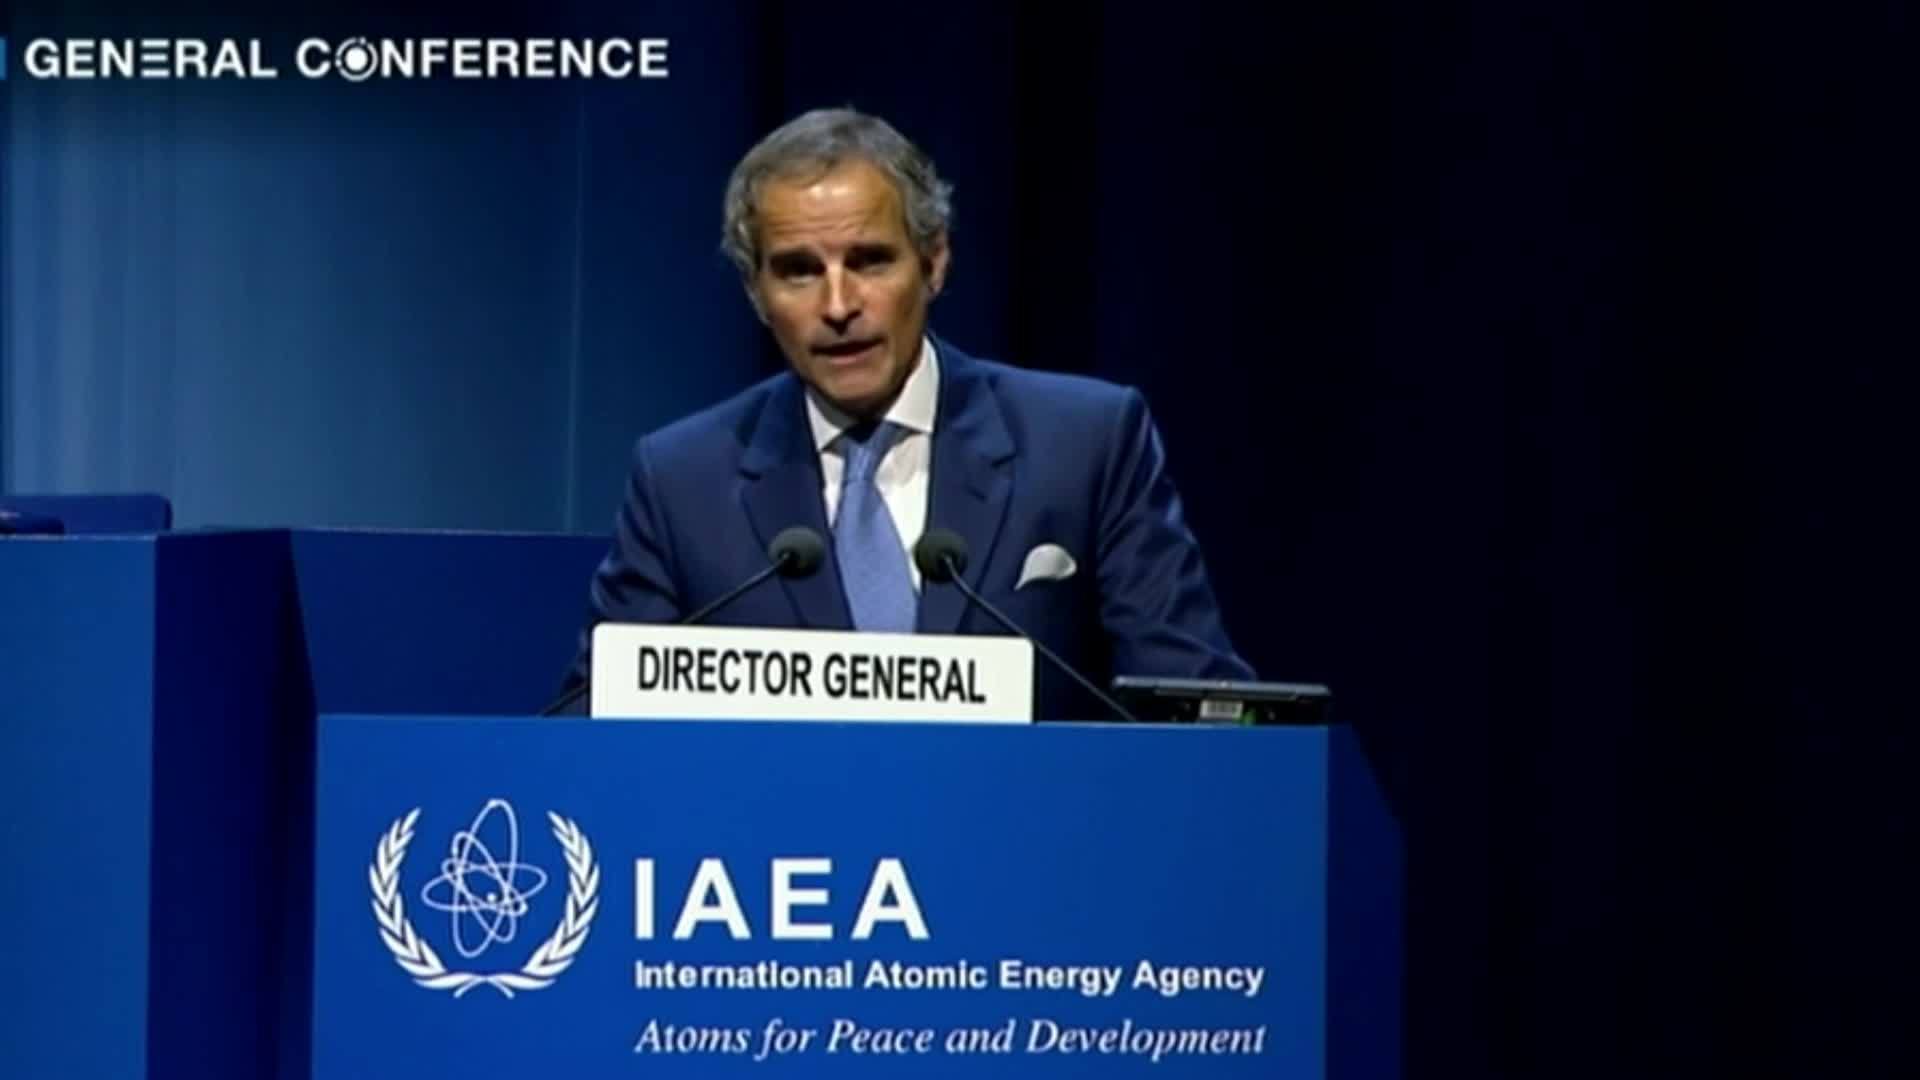 Relatório atualizado da AIEA aponta crescimento da energia nuclear nas próximas décadas